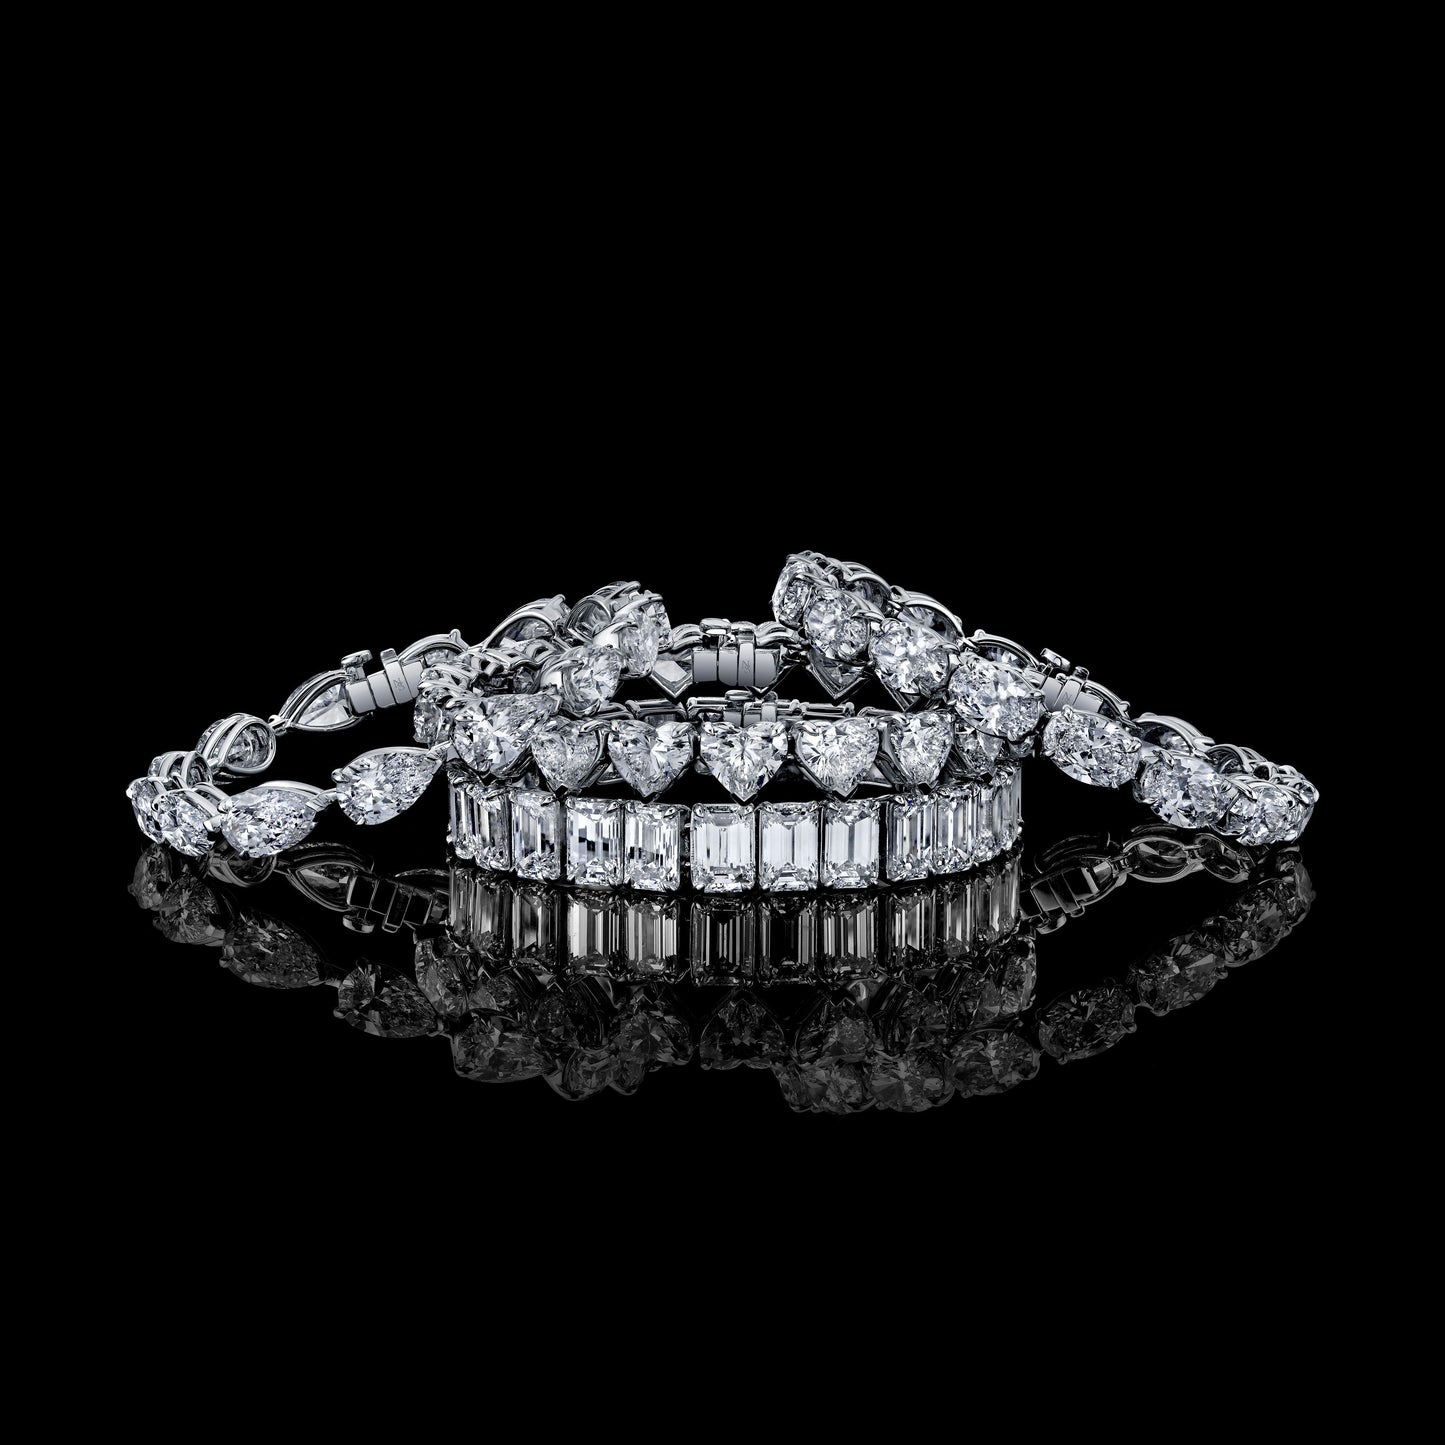 32 Carat Oval Cut Diamond Bracelet